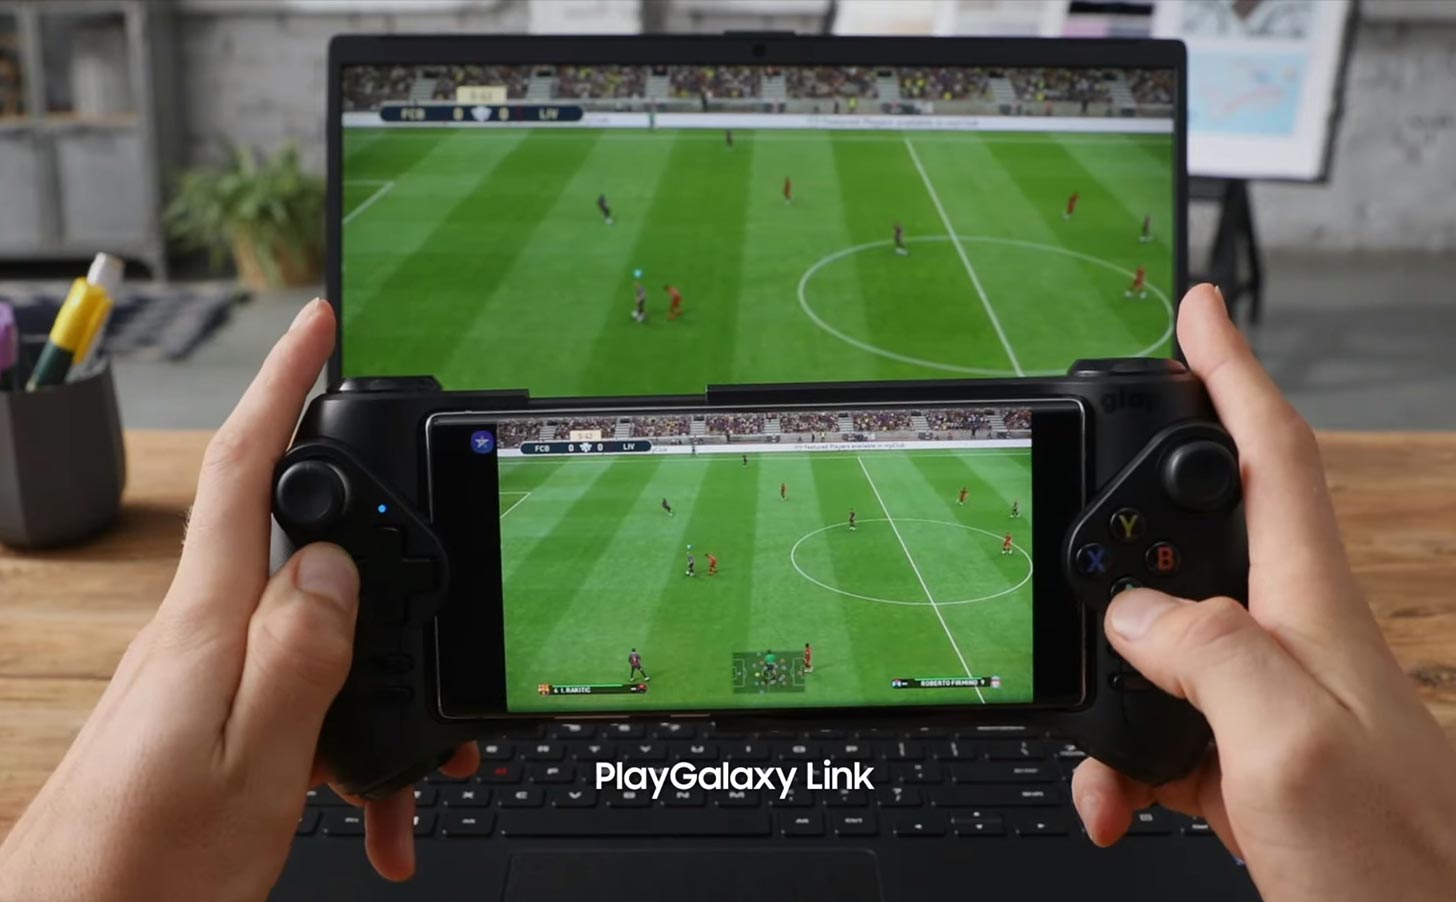 سيتم إيقاف خدمة PlayGalaxy Link من Samsung في 27 مارس 2